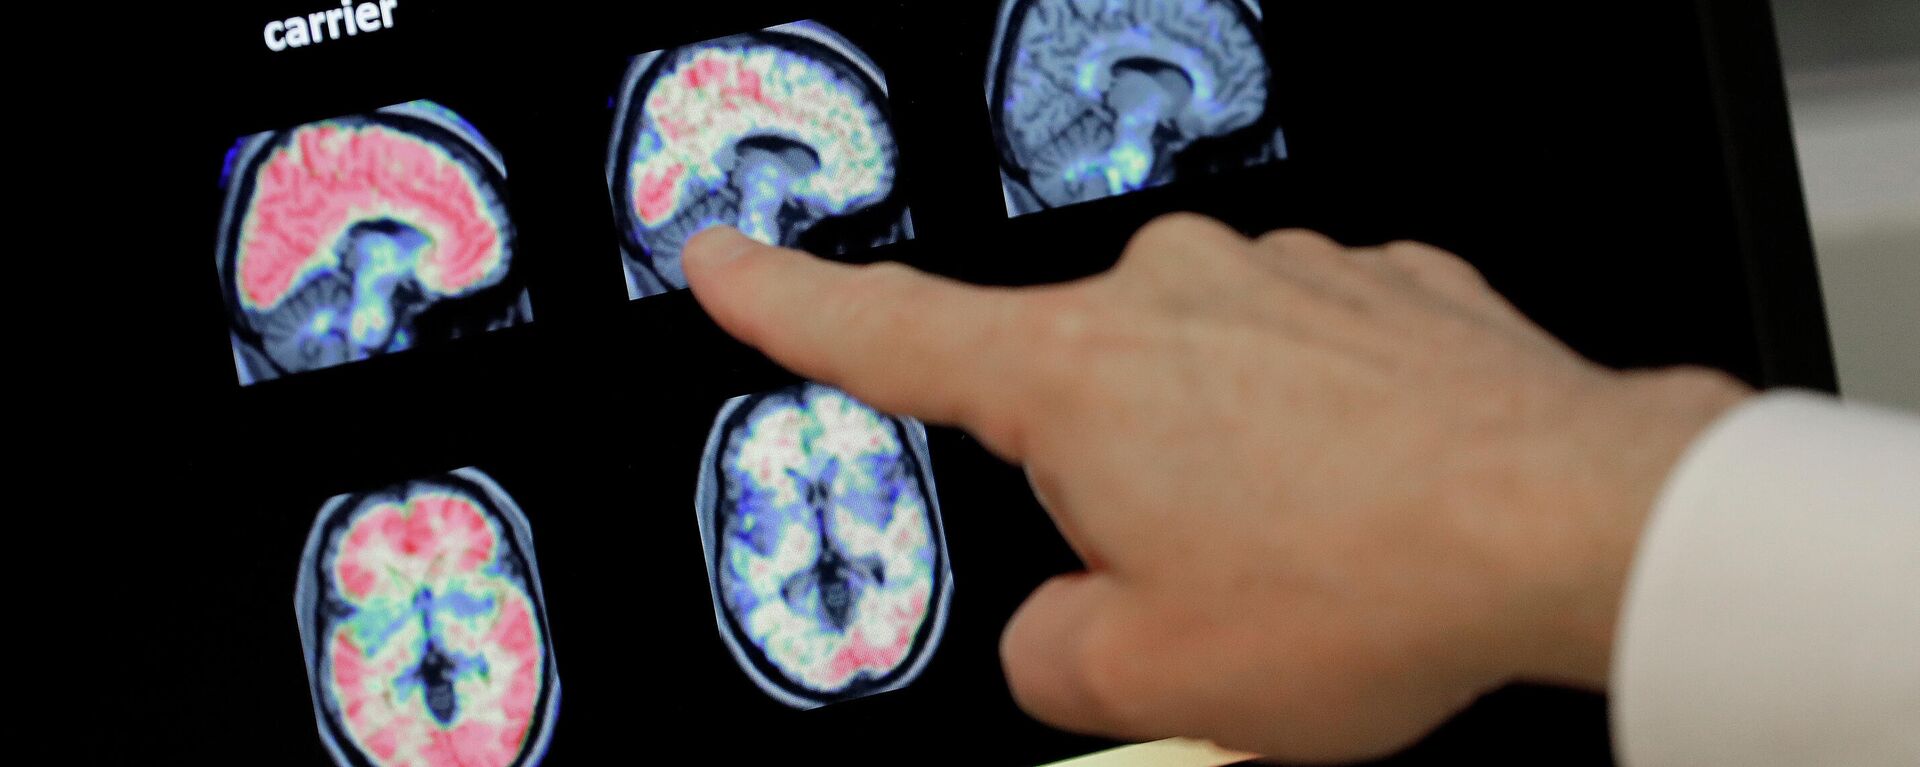 En esta foto de archivo del 14 de agosto de 2018, un médico observa una tomografía computarizada de un cerebro.  - Sputnik Mundo, 1920, 15.04.2021